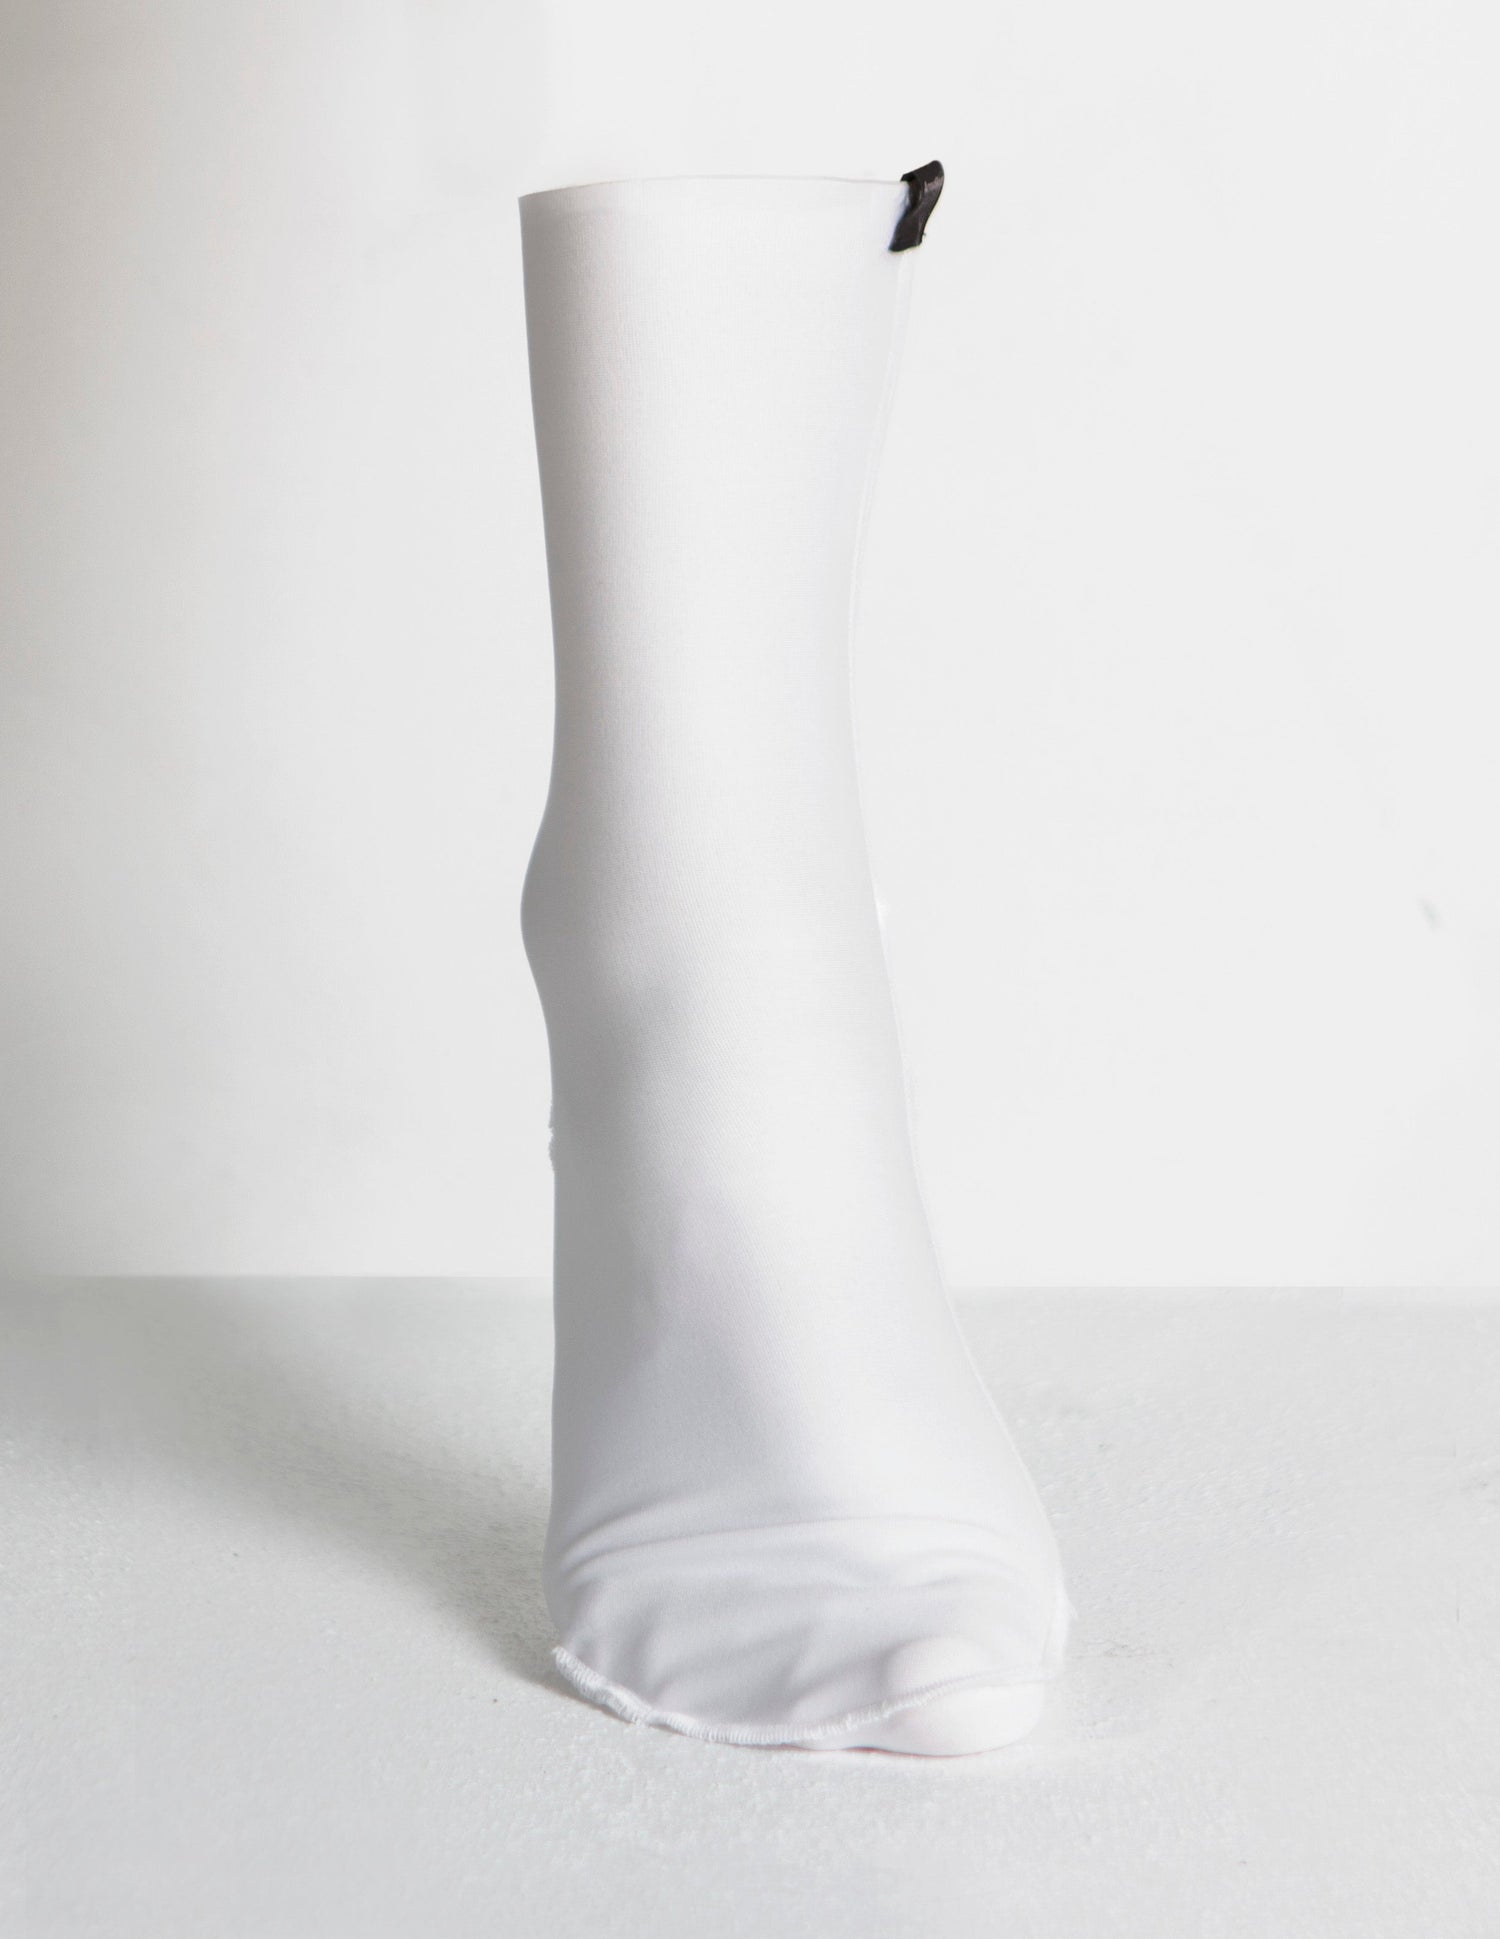 ArmaSkin Anti-Blister Long Liner Socks for Men and Women